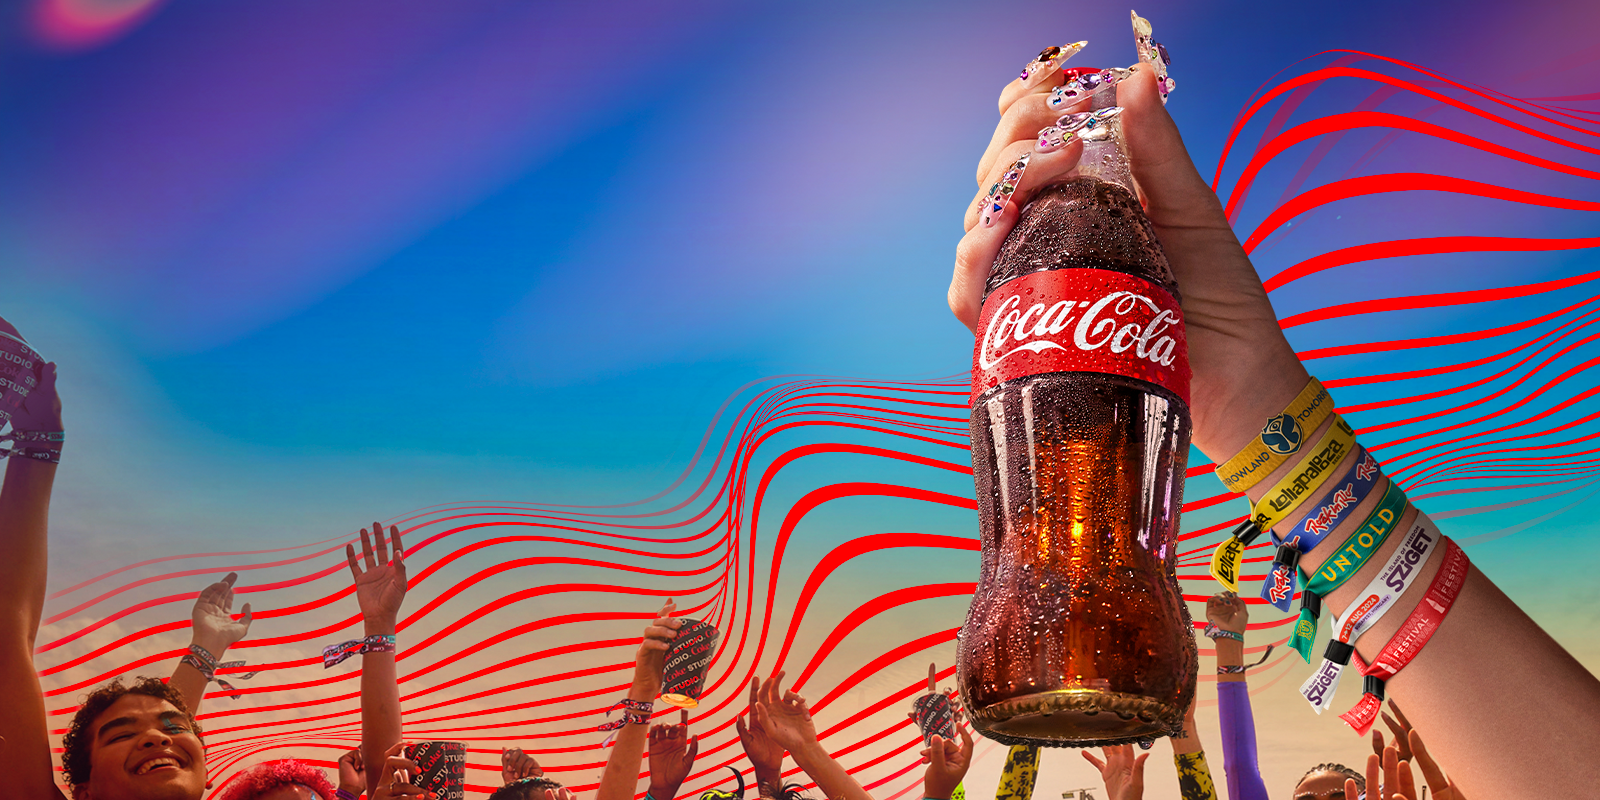 coke festival image